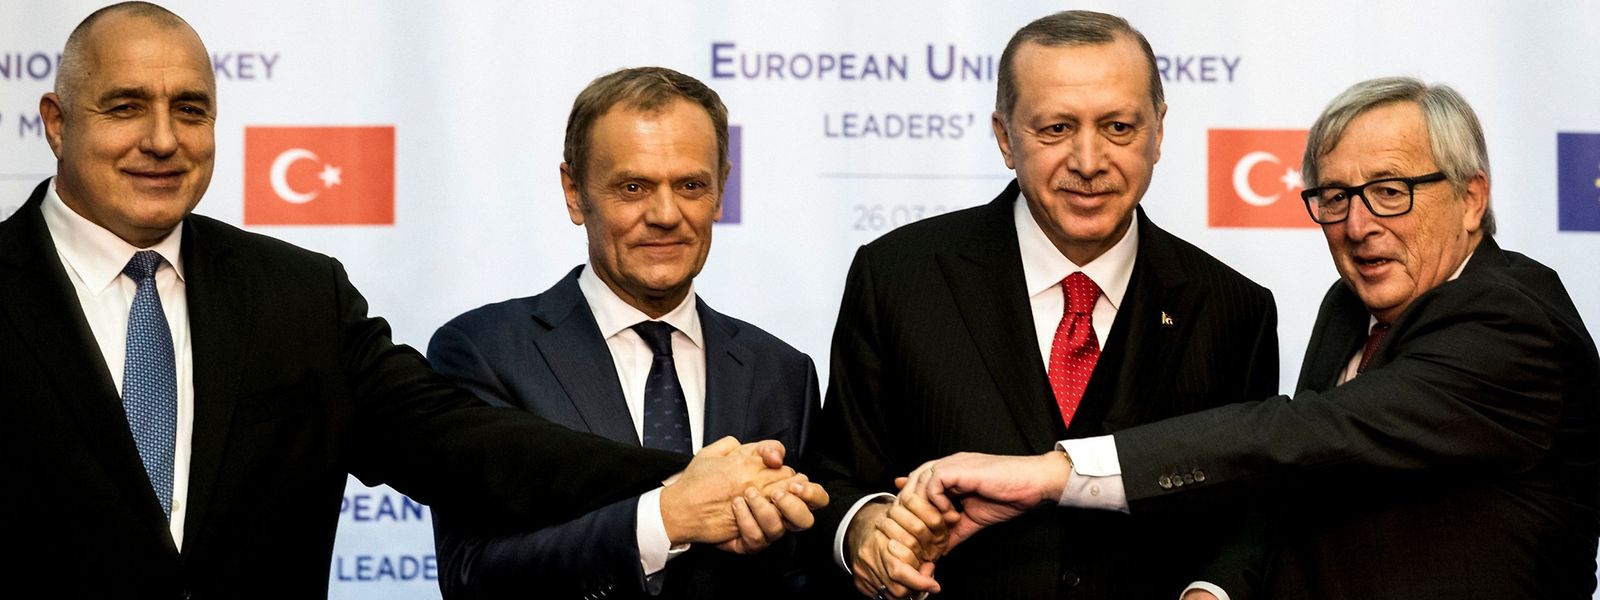 (De g. à dr) Le Premier ministre bulgare, Boyko Borissov, le président de l'UE, Donald Tusk, le président turc, Recep Tayyip Erdogan, et le président de la Commission européenne, le Luxembourgeois Jean-Claude Juncker, posent pour la photo officielle du Sommet UE-Turquie à Varna.